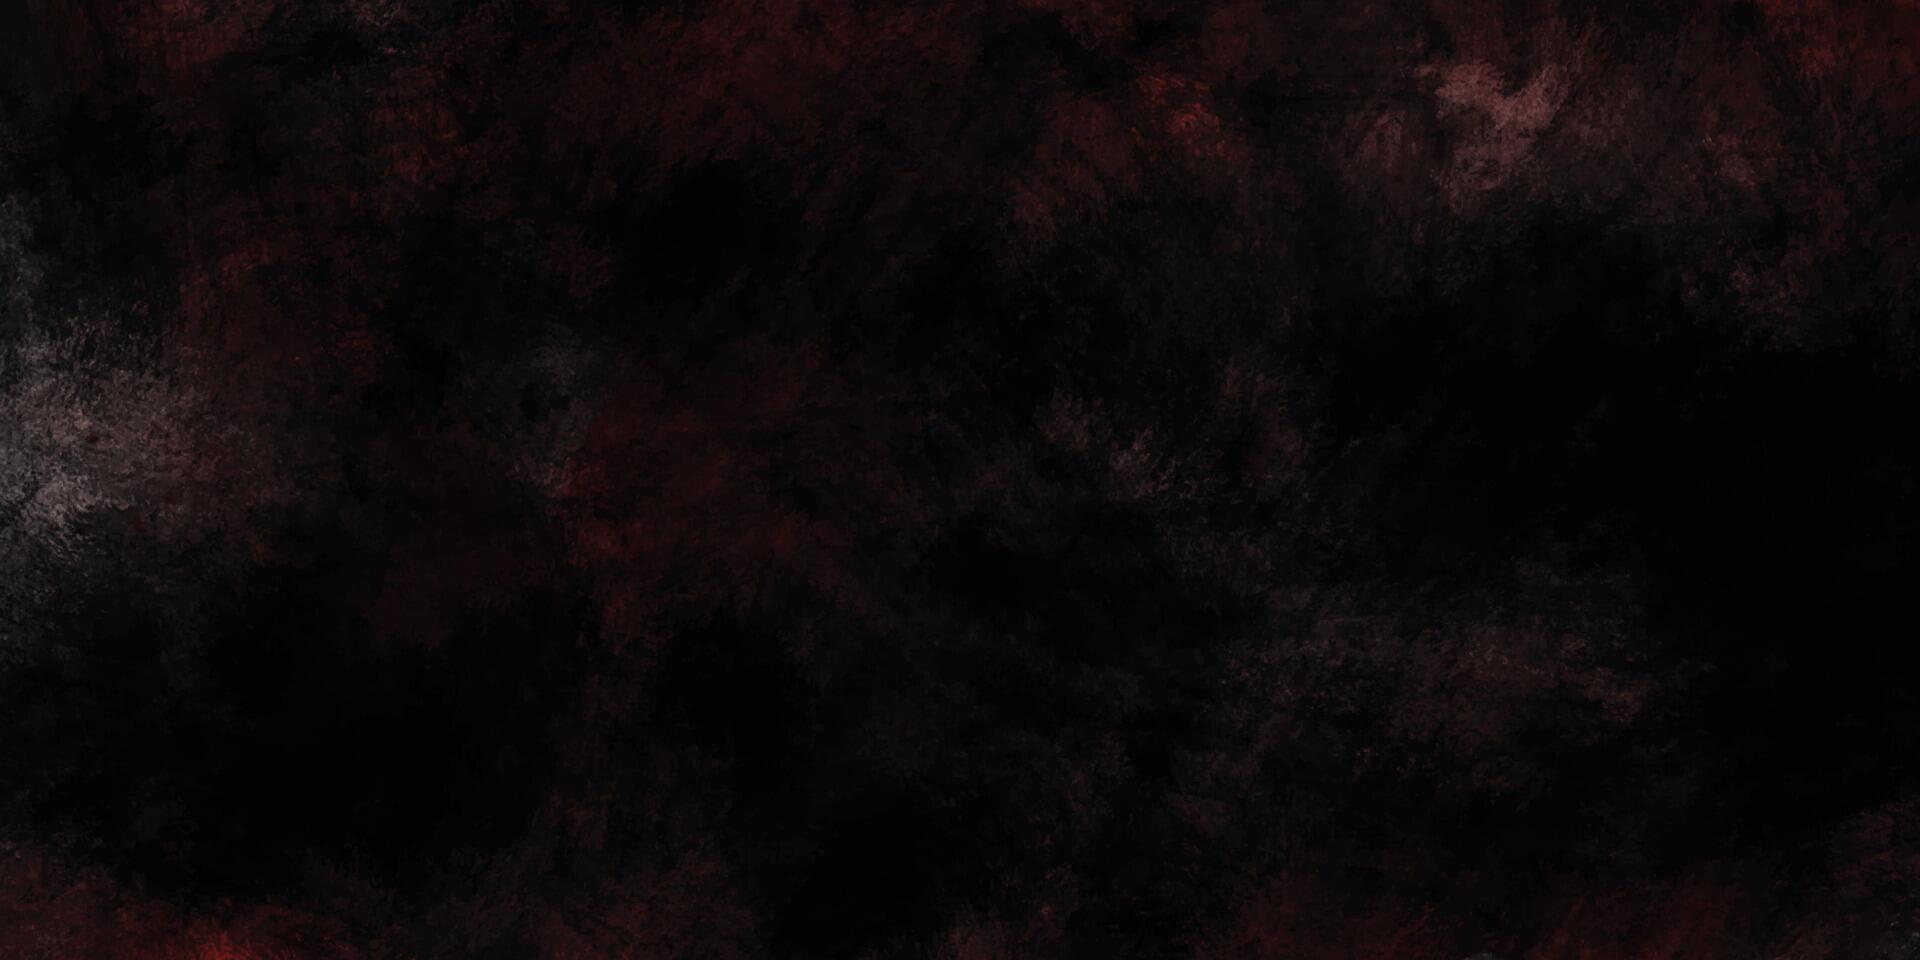 röd grunge repig textur. textur av måla. svart och röd smutsig årgång bakgrund. mörk grunge textur bakgrund. mörk explosion bakgrund. abstrakt vattenfärg bakgrund textur. vektor